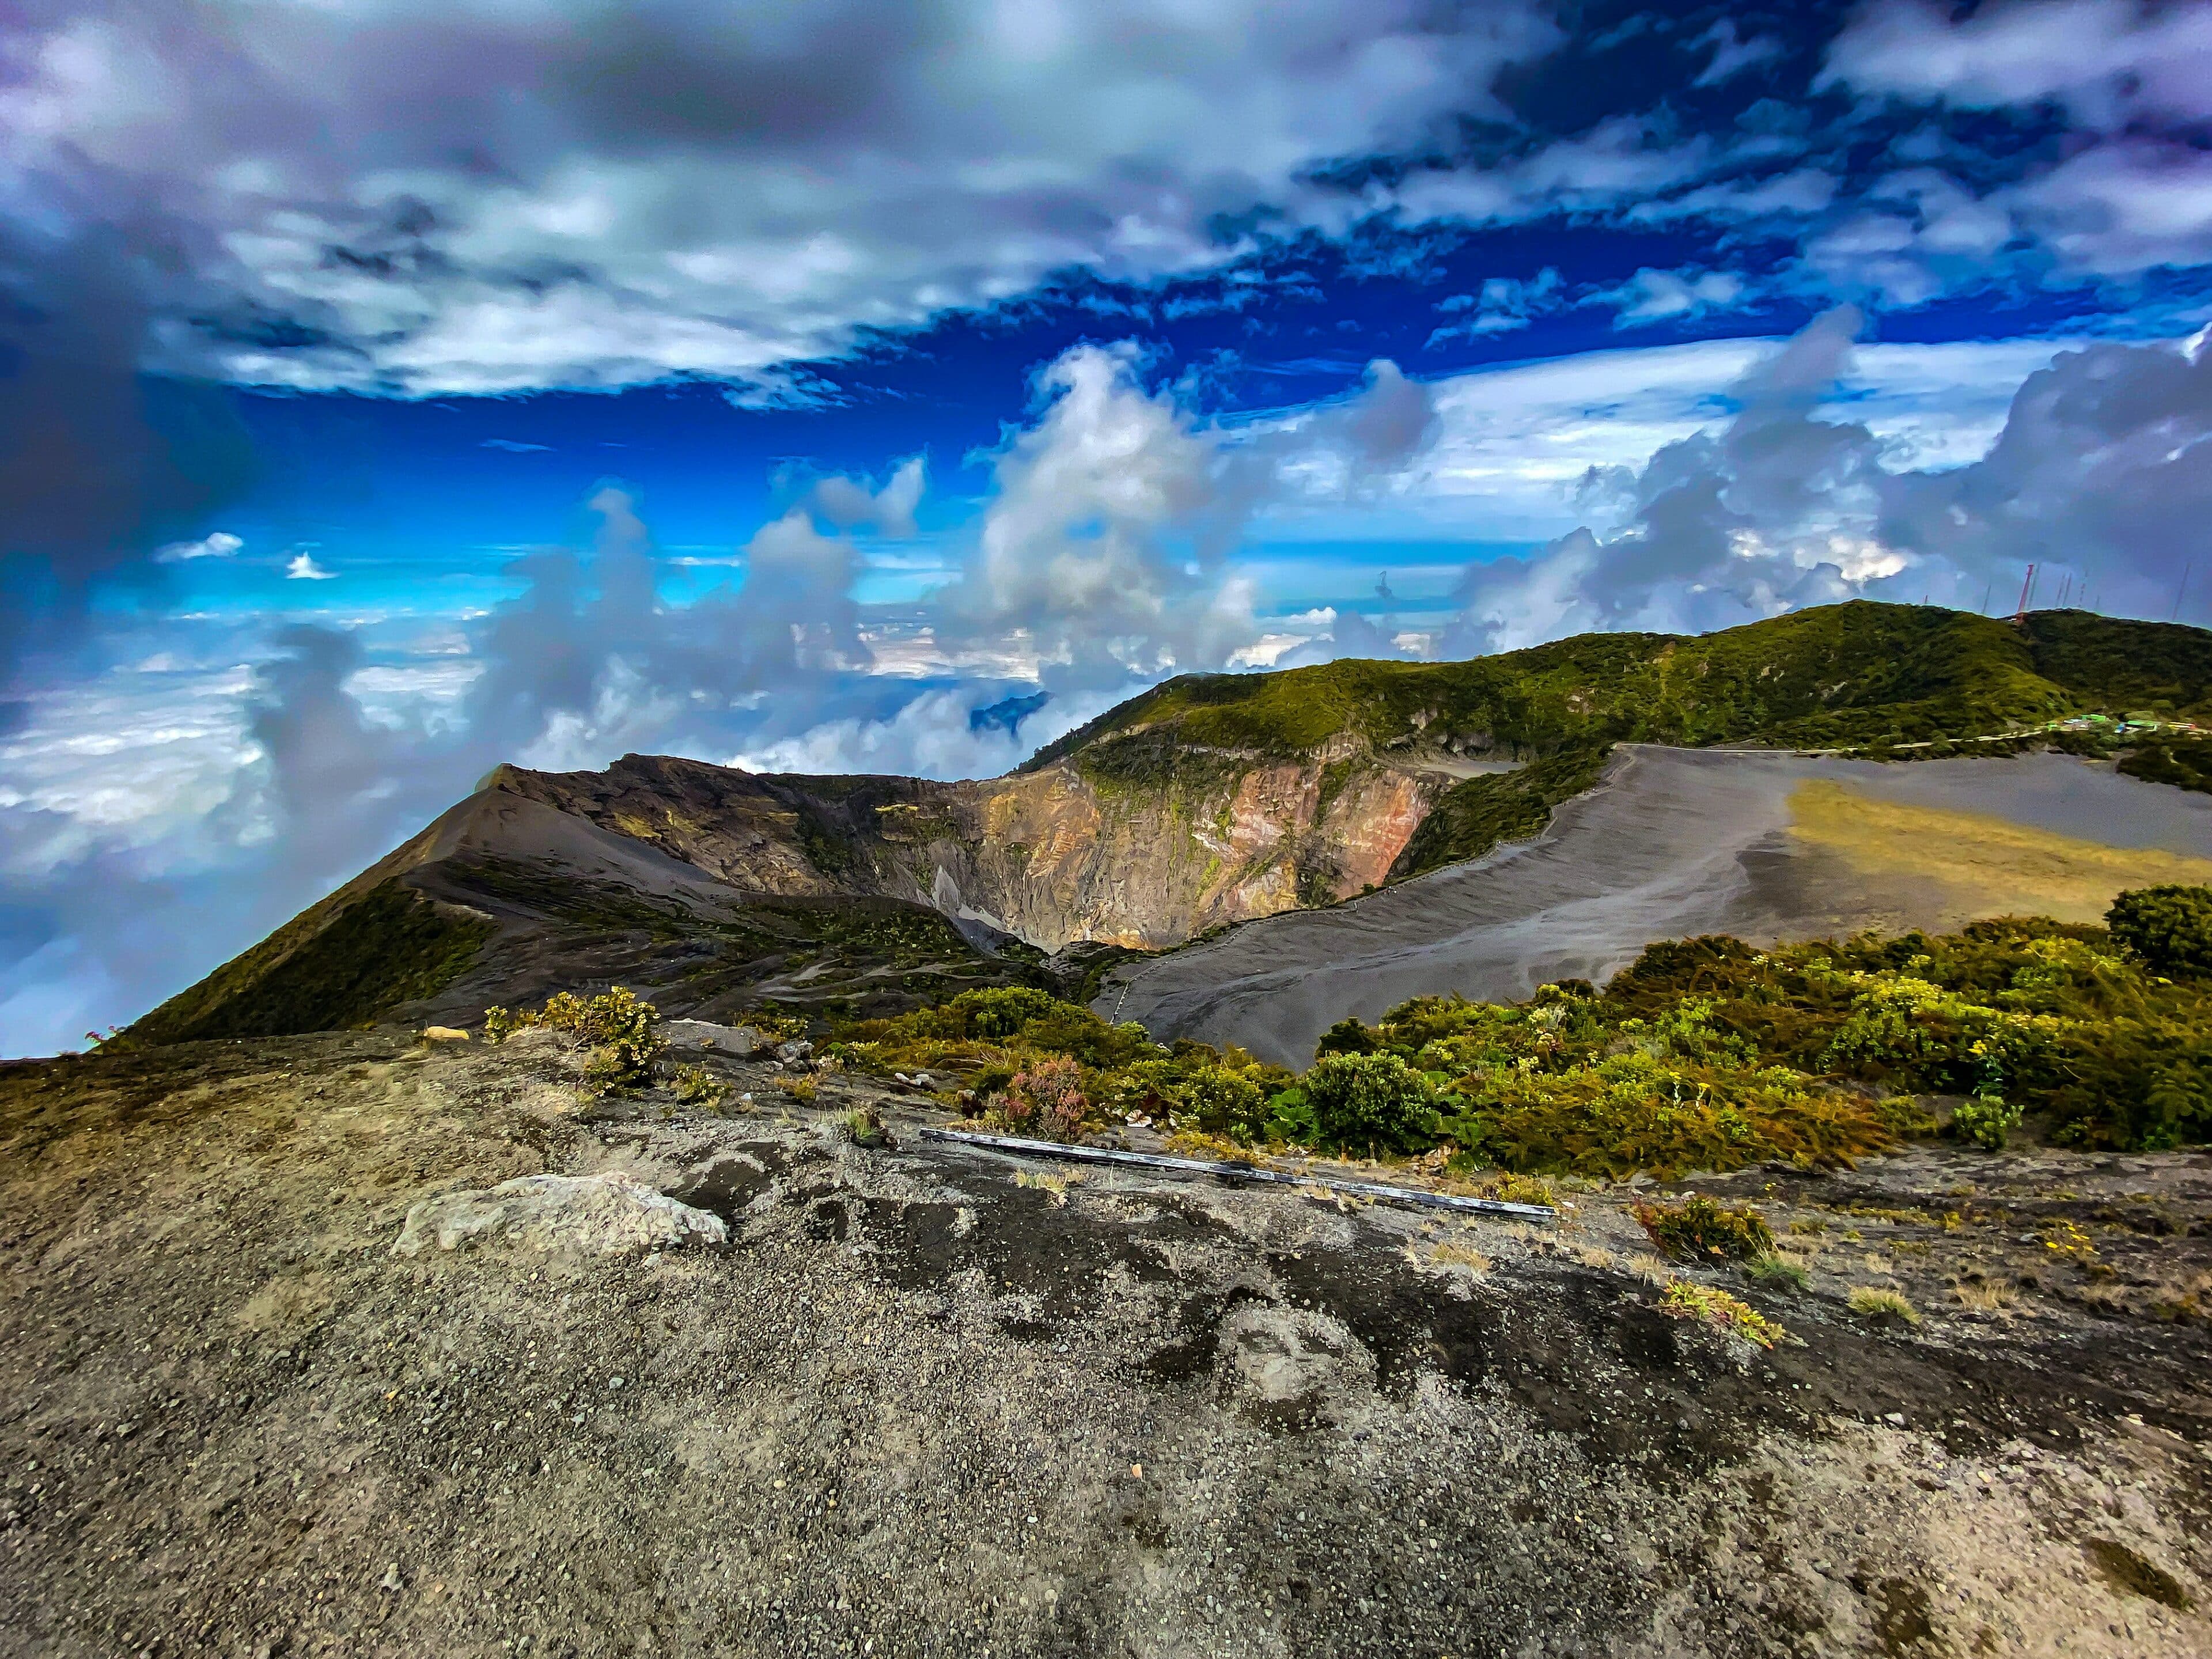 El Volcán Irazú de Costa Rica Belleza Natural y Maravilla Geológica